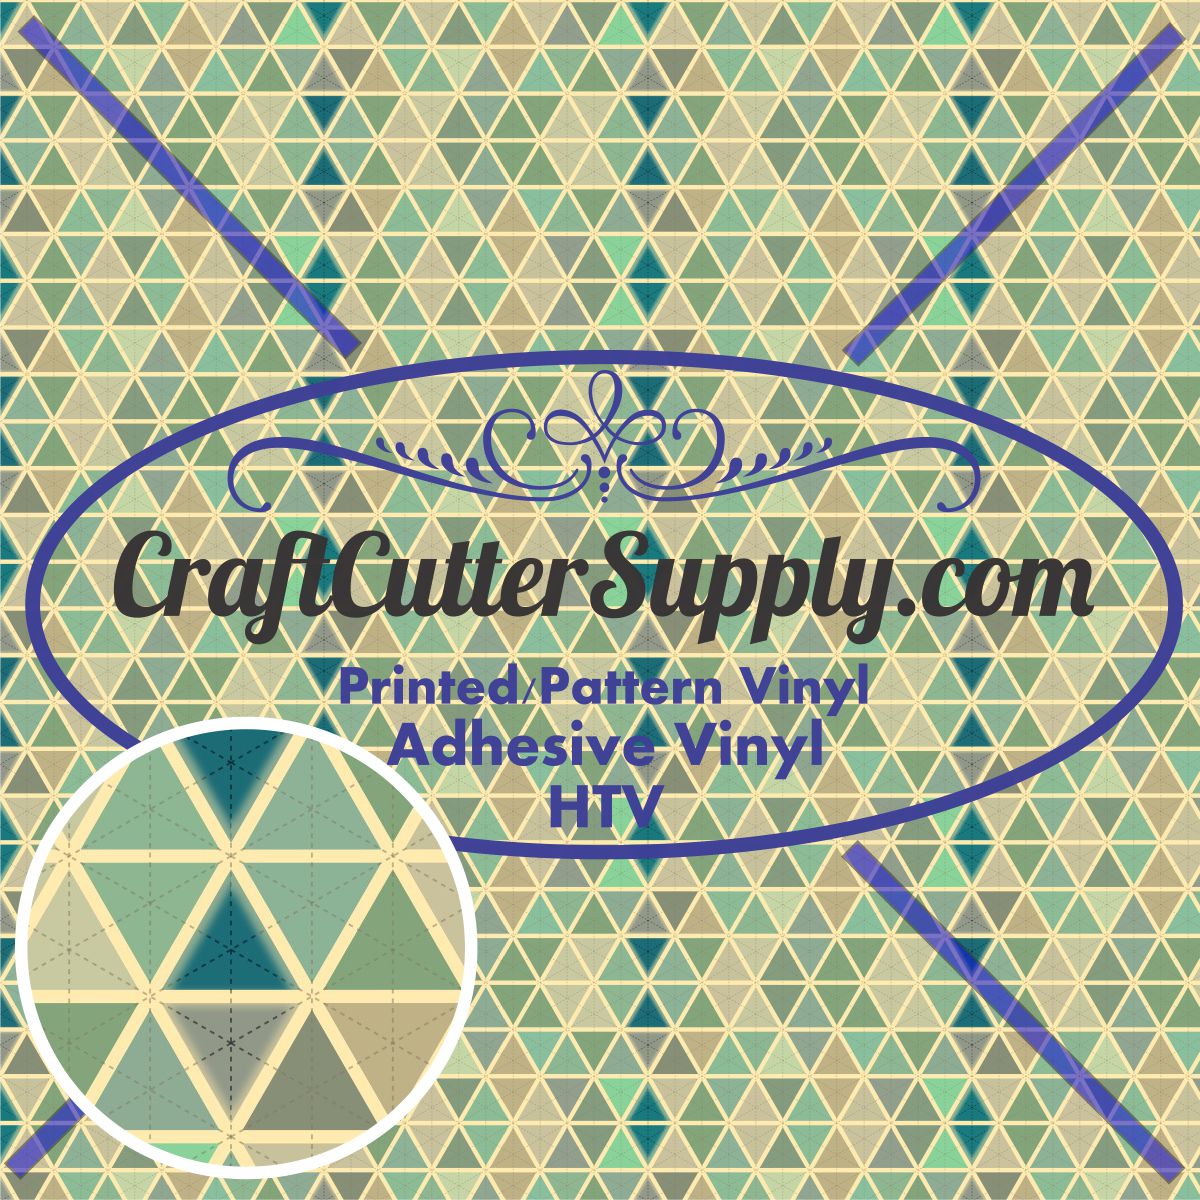 Pattern 48 12x12 - CraftCutterSupply.com